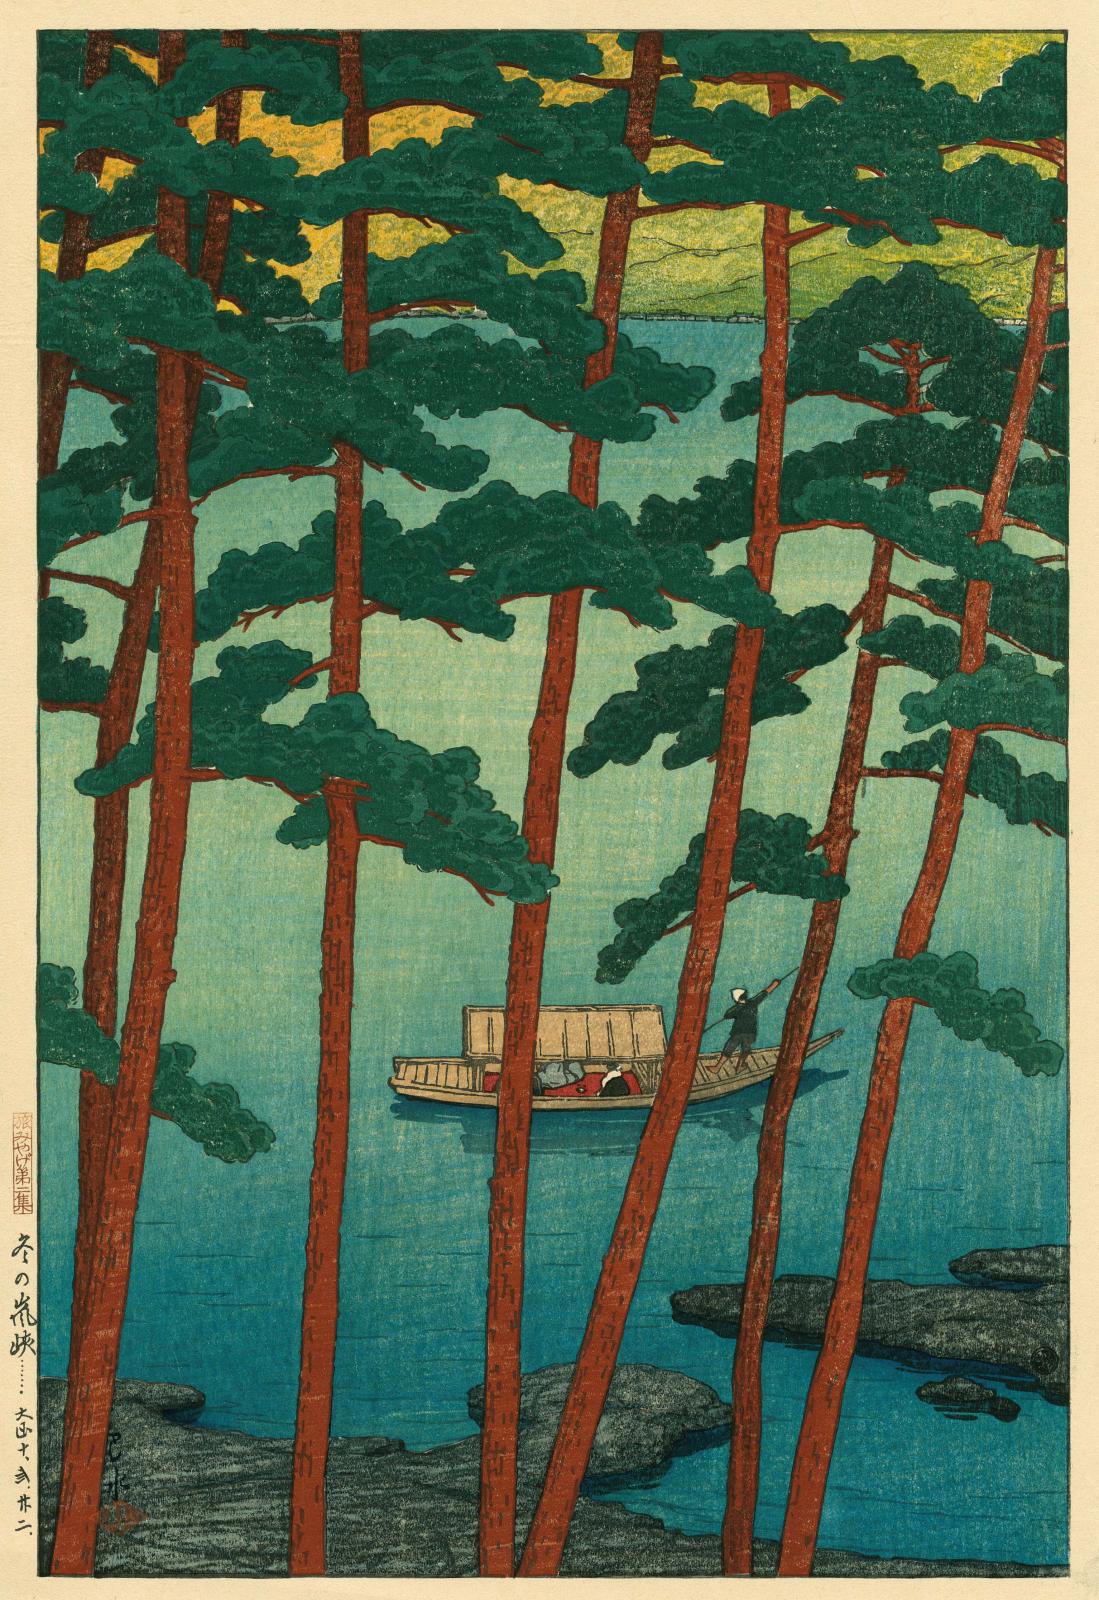 Kawase Hasui (1883-1957), Hiver dans les gorges d’Arashi, issu de la série «Souvenirs de voyage», deuxième série, 1921, gravure sur bois, 39 x 26,7 cm